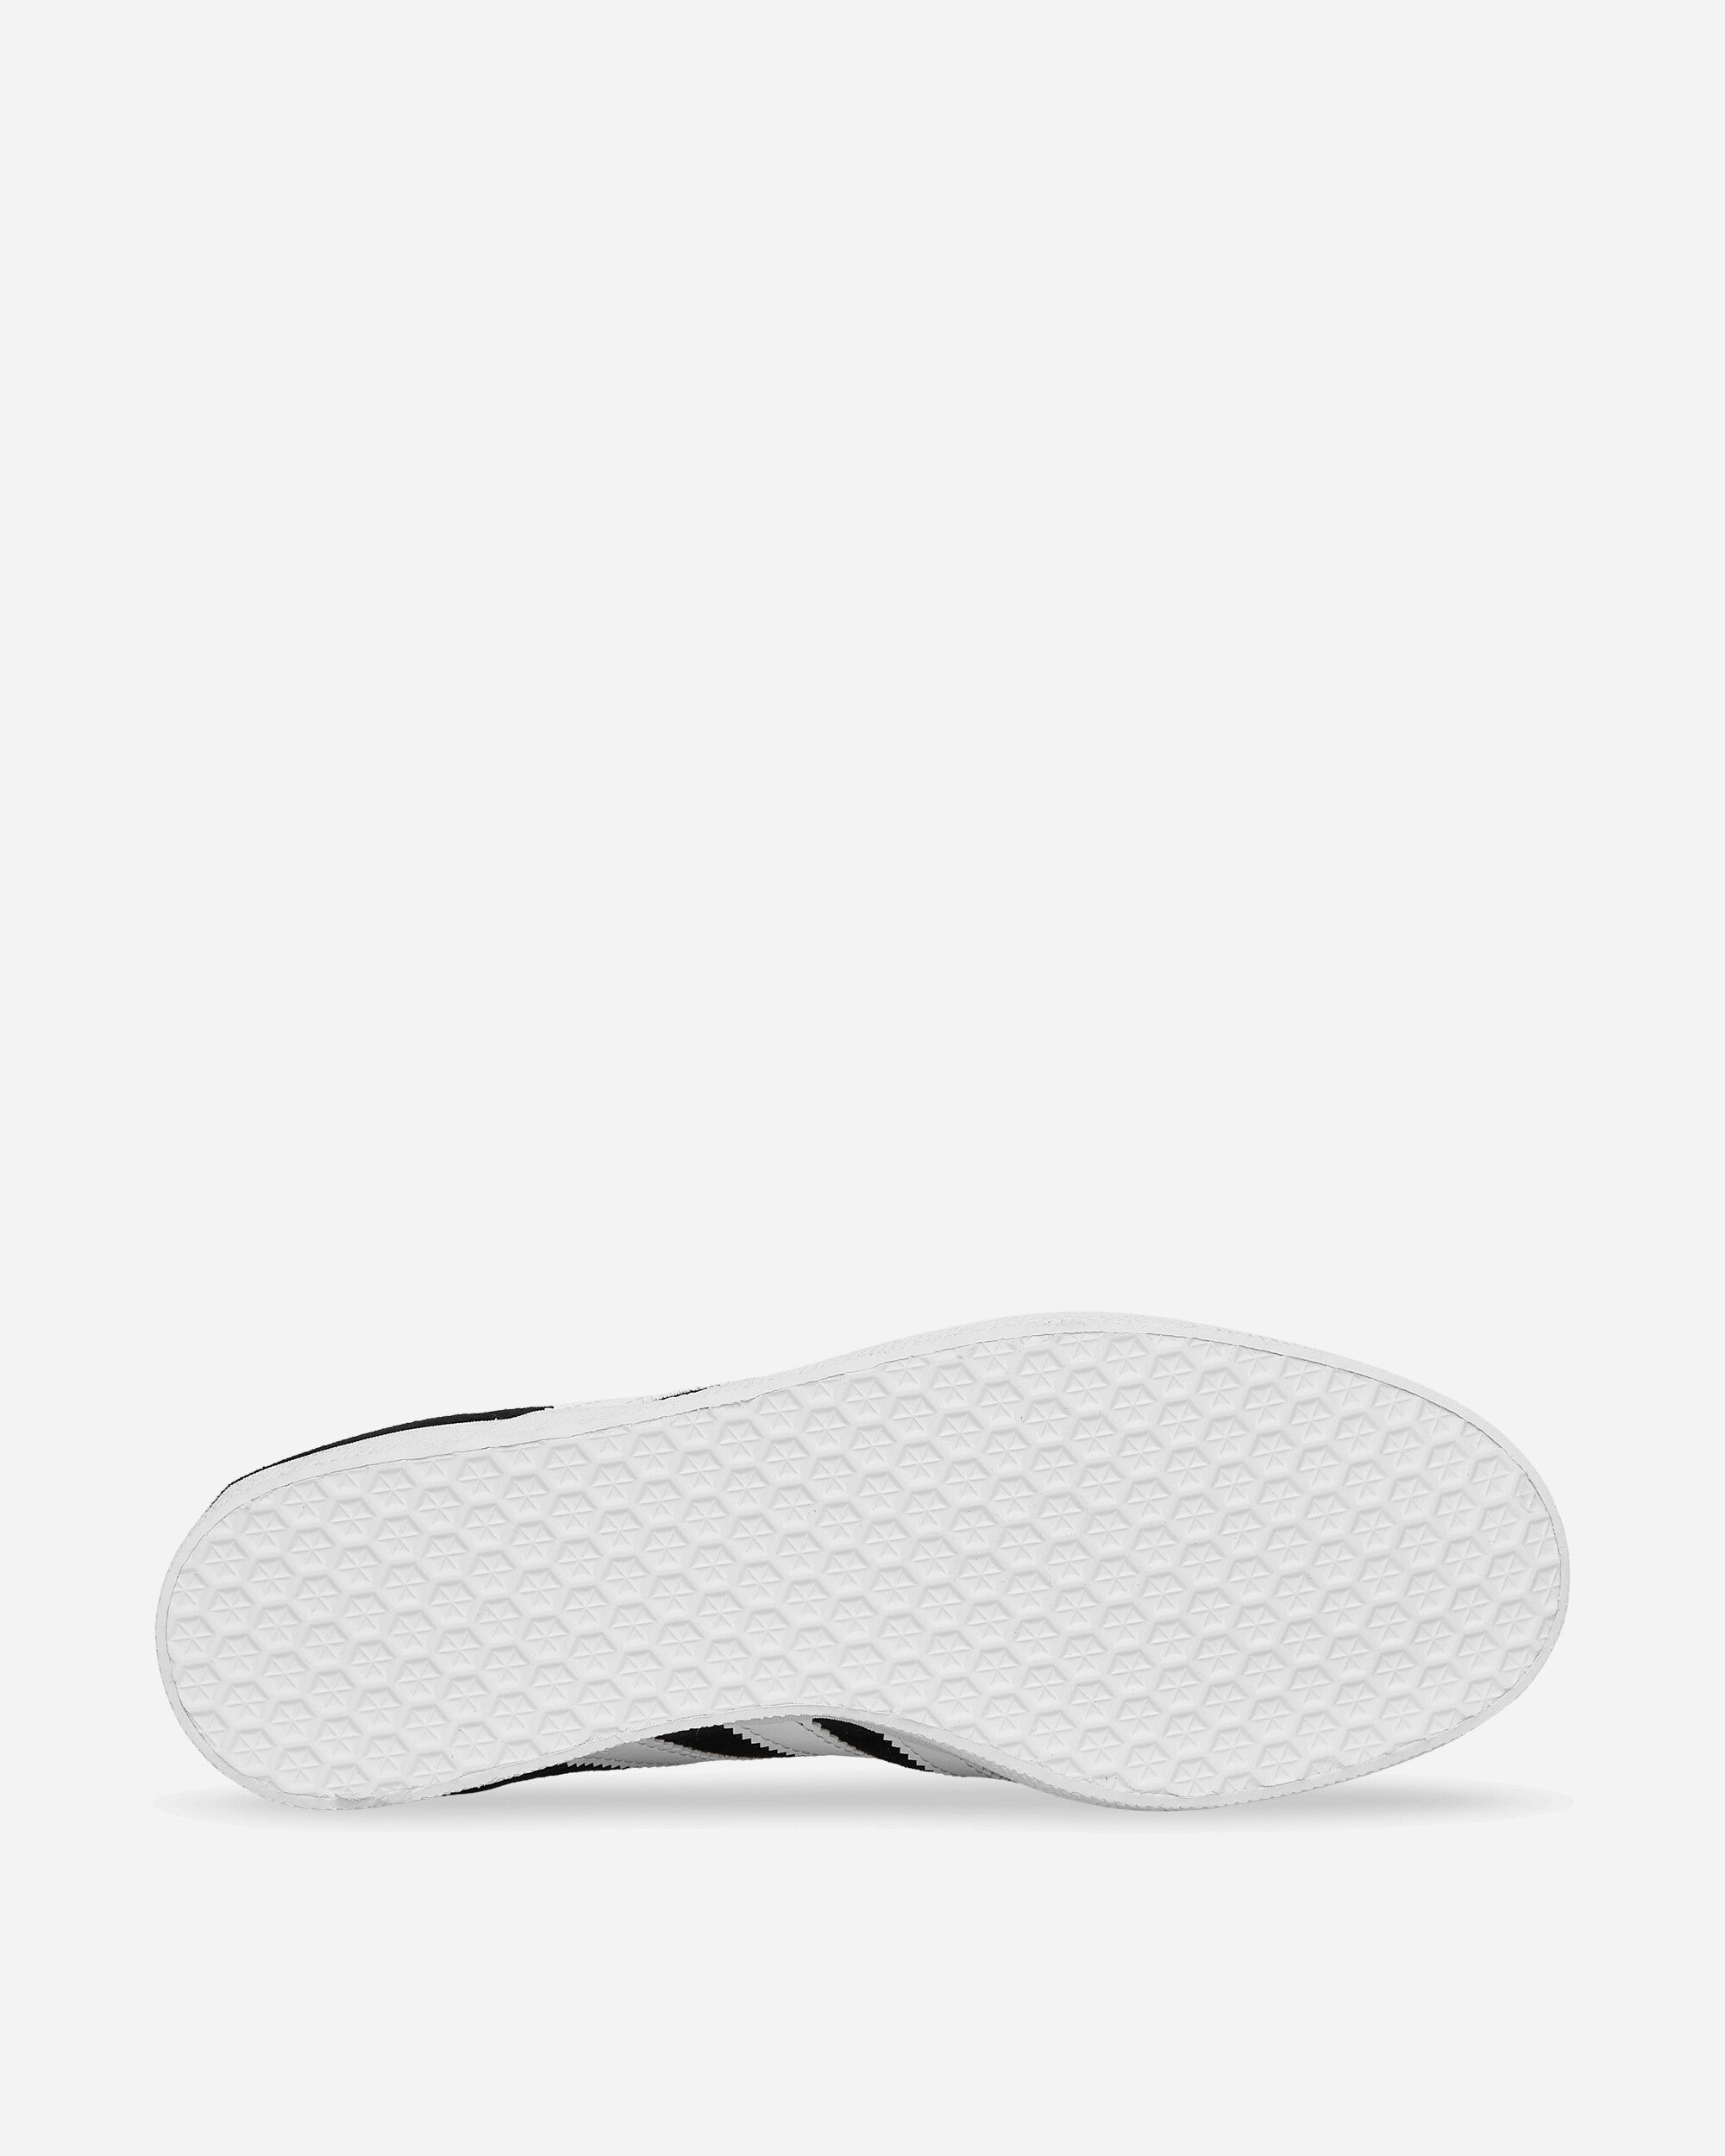 adidas Gazelle Cblack/White Sneakers Low BB5476 001